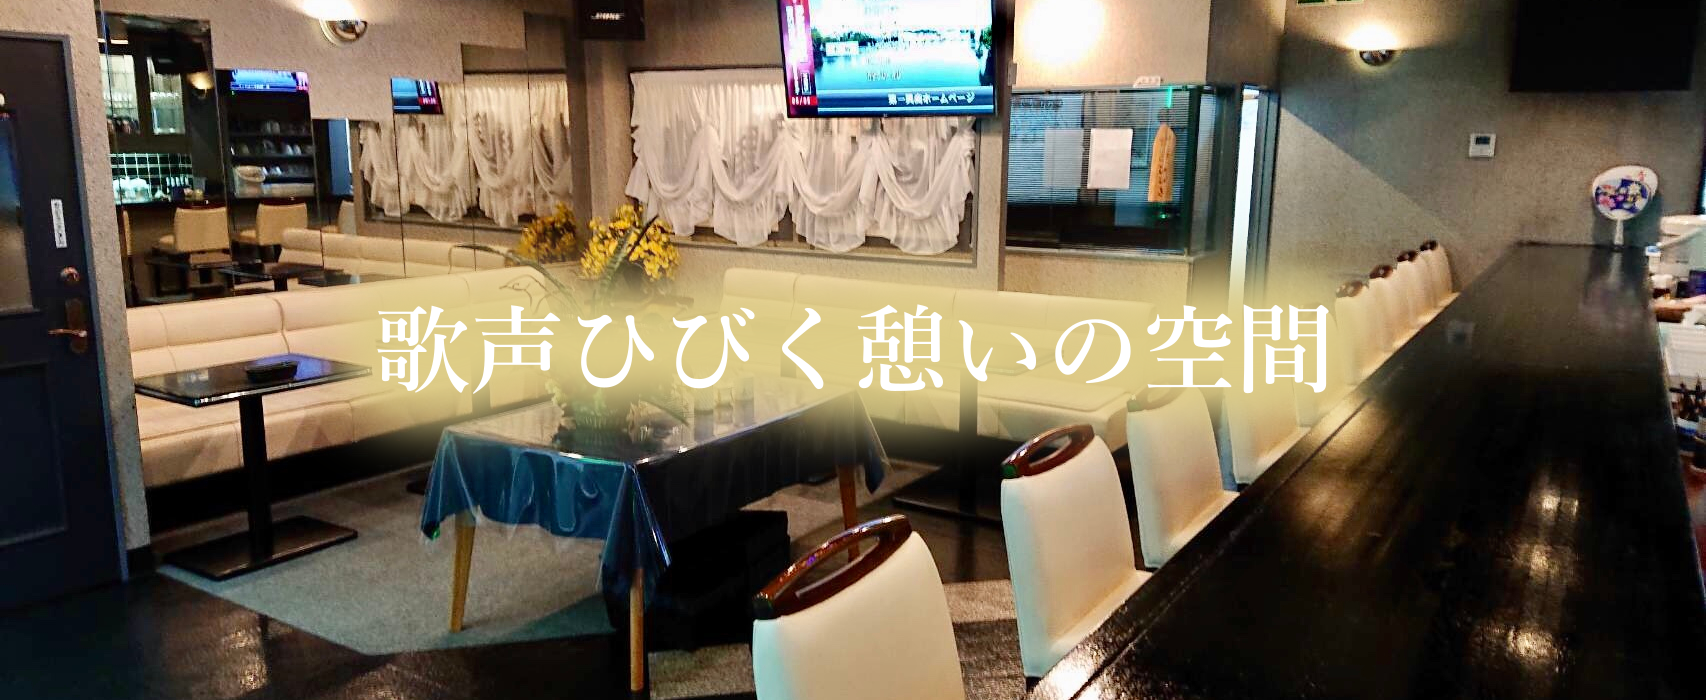 八王市のカラオケ喫茶カラオケステージひびき店内写真2